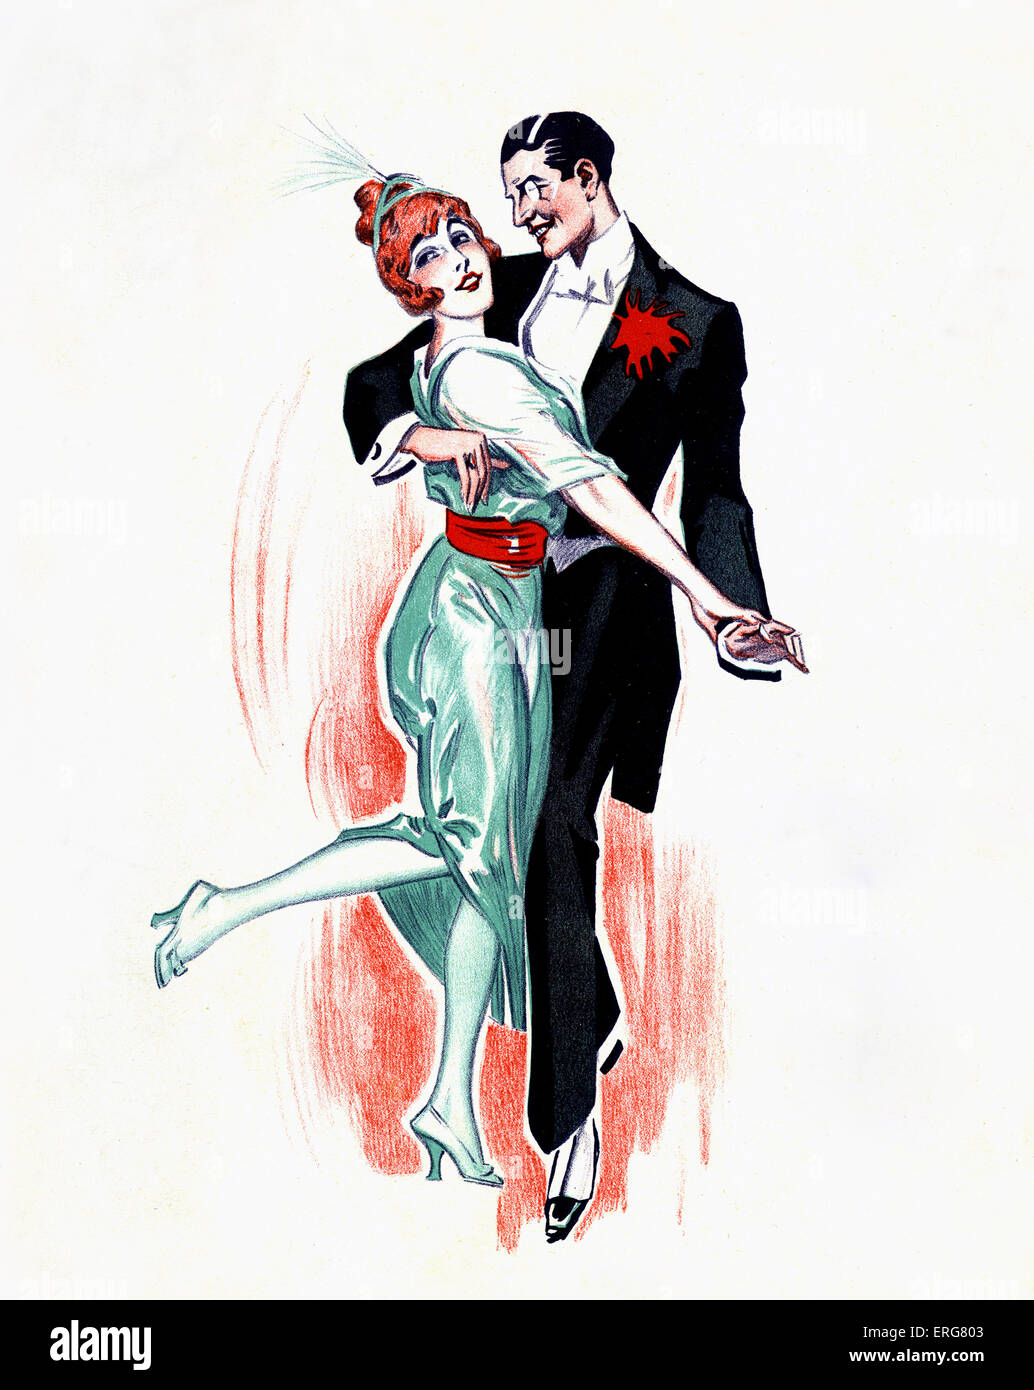 One-step - couple de danse. La danse de bal populaire dans la danse sociale au début du 20e siècle. Amikayo. Banque D'Images